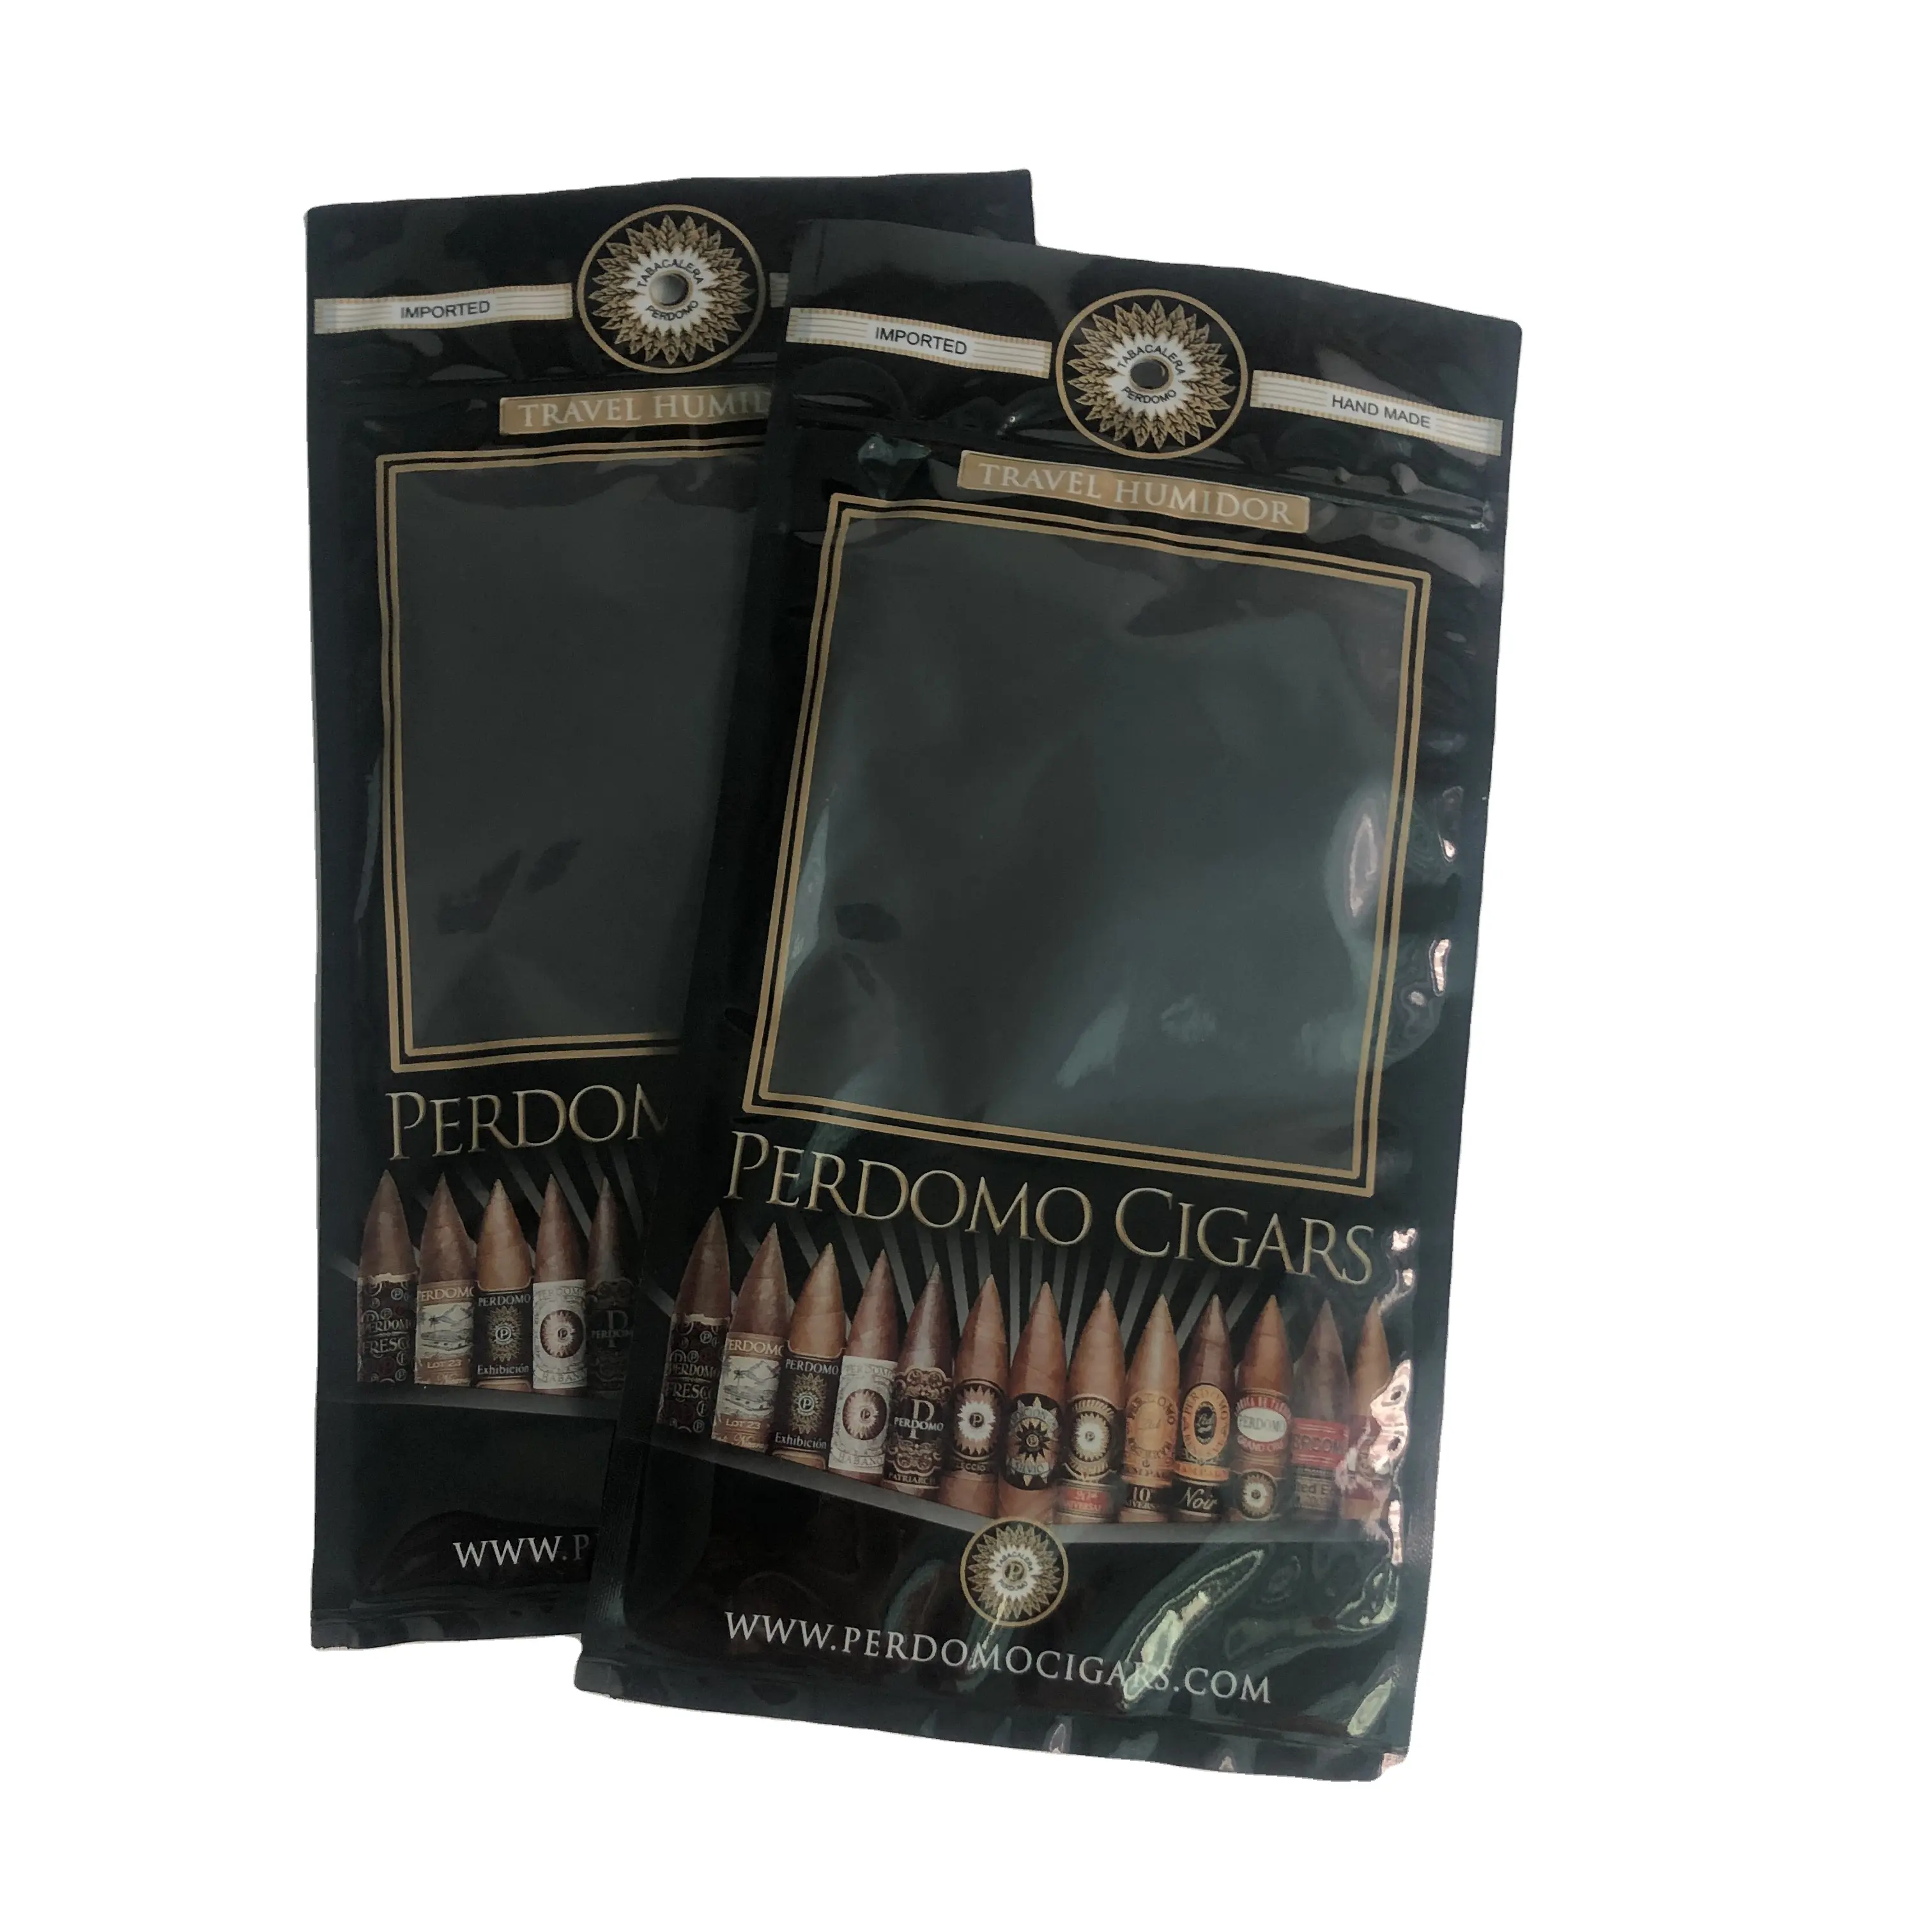 कस्टम मुद्रित आर्द्रता नियंत्रण मॉइस्चराइजिंग सिगार बैग के लिए पुनर्जयोग्य ज़िपलॉक लपेटें